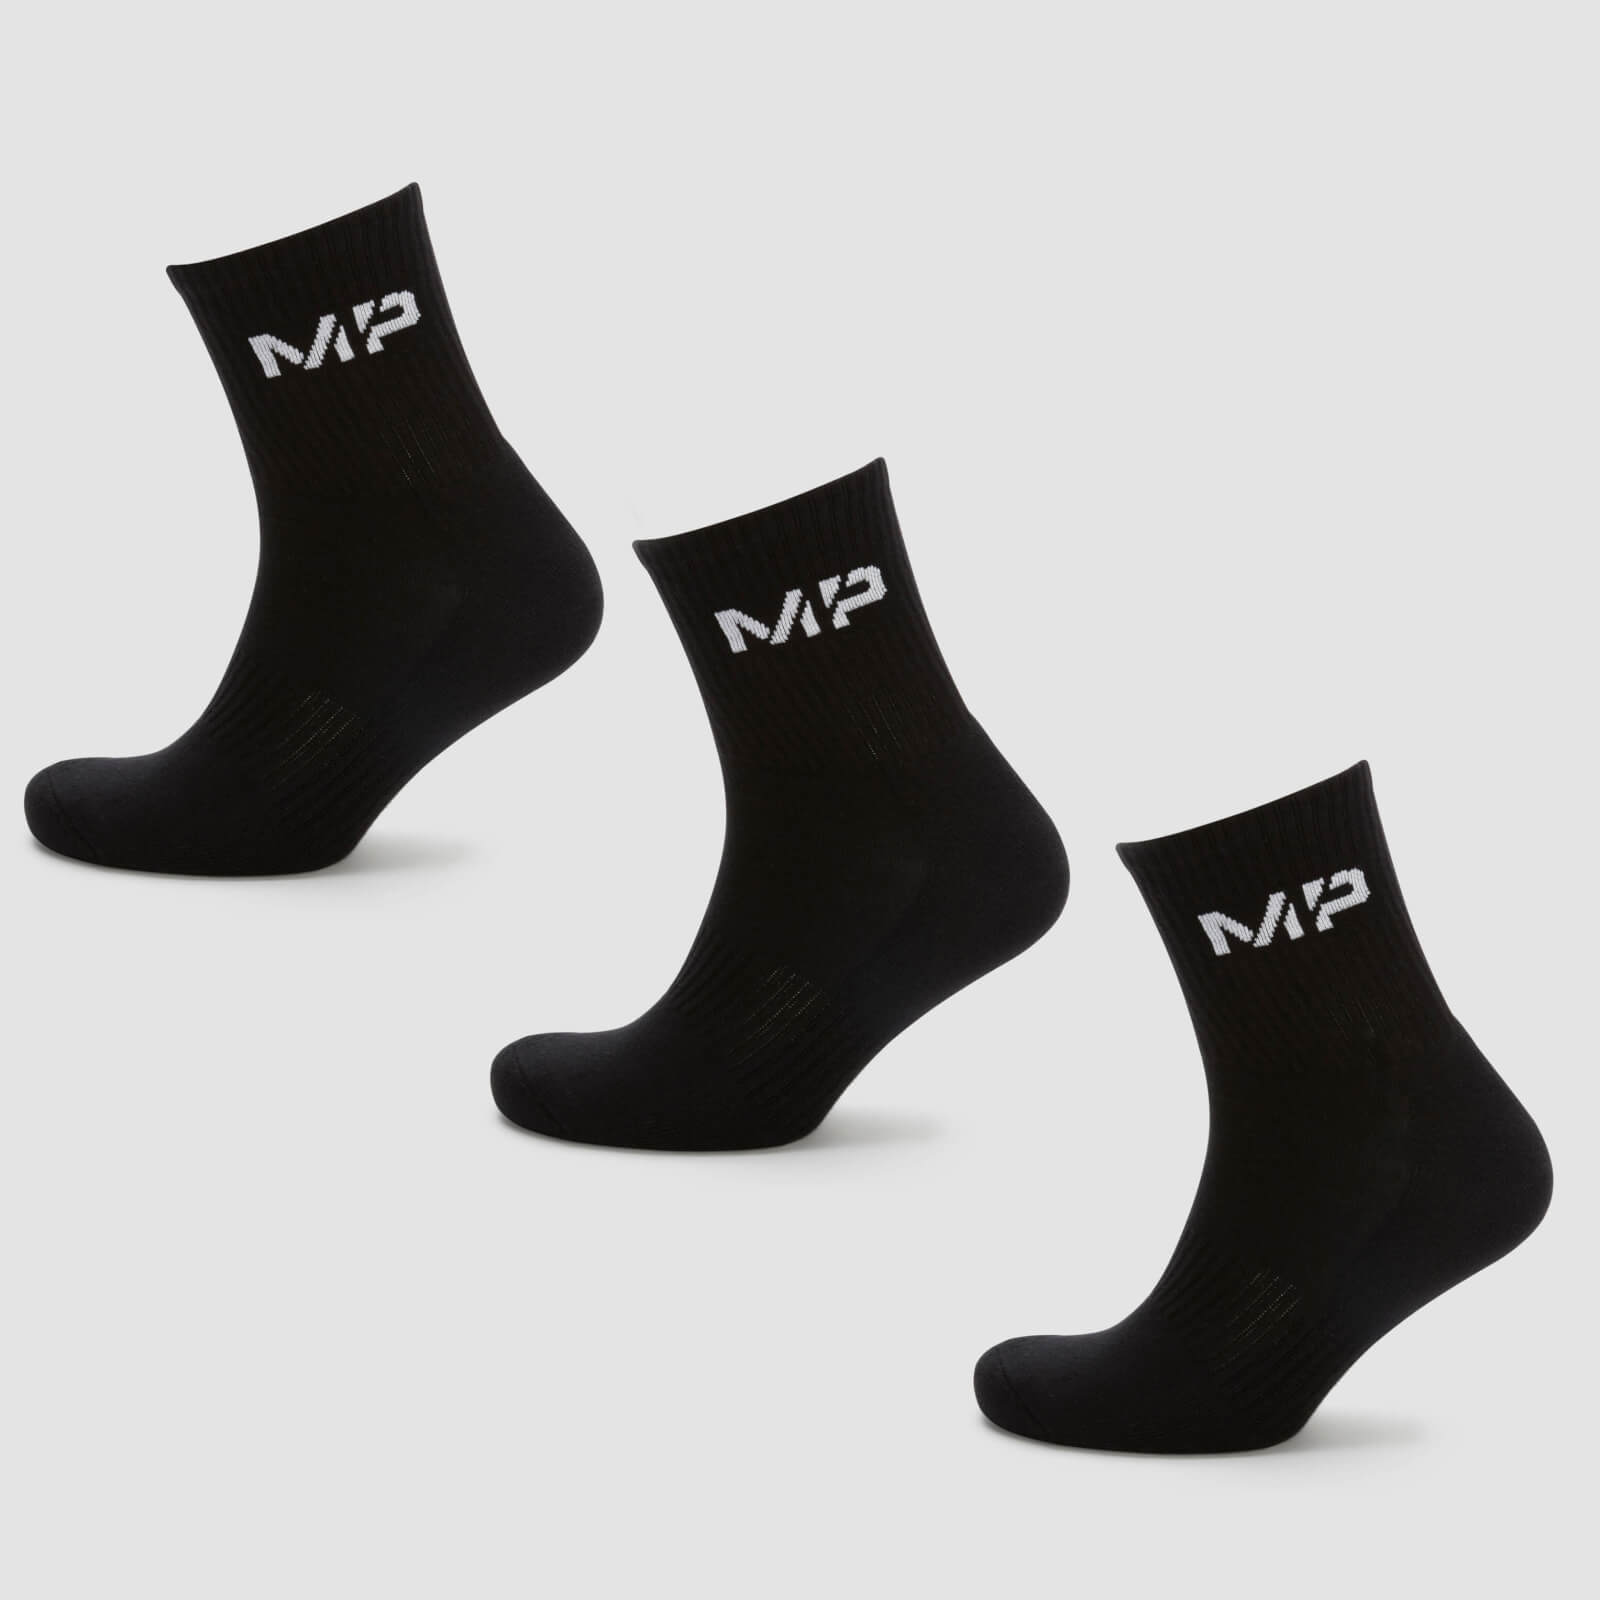 MP Men's Crew Socks (3 Pack) - Black - UK 6-8